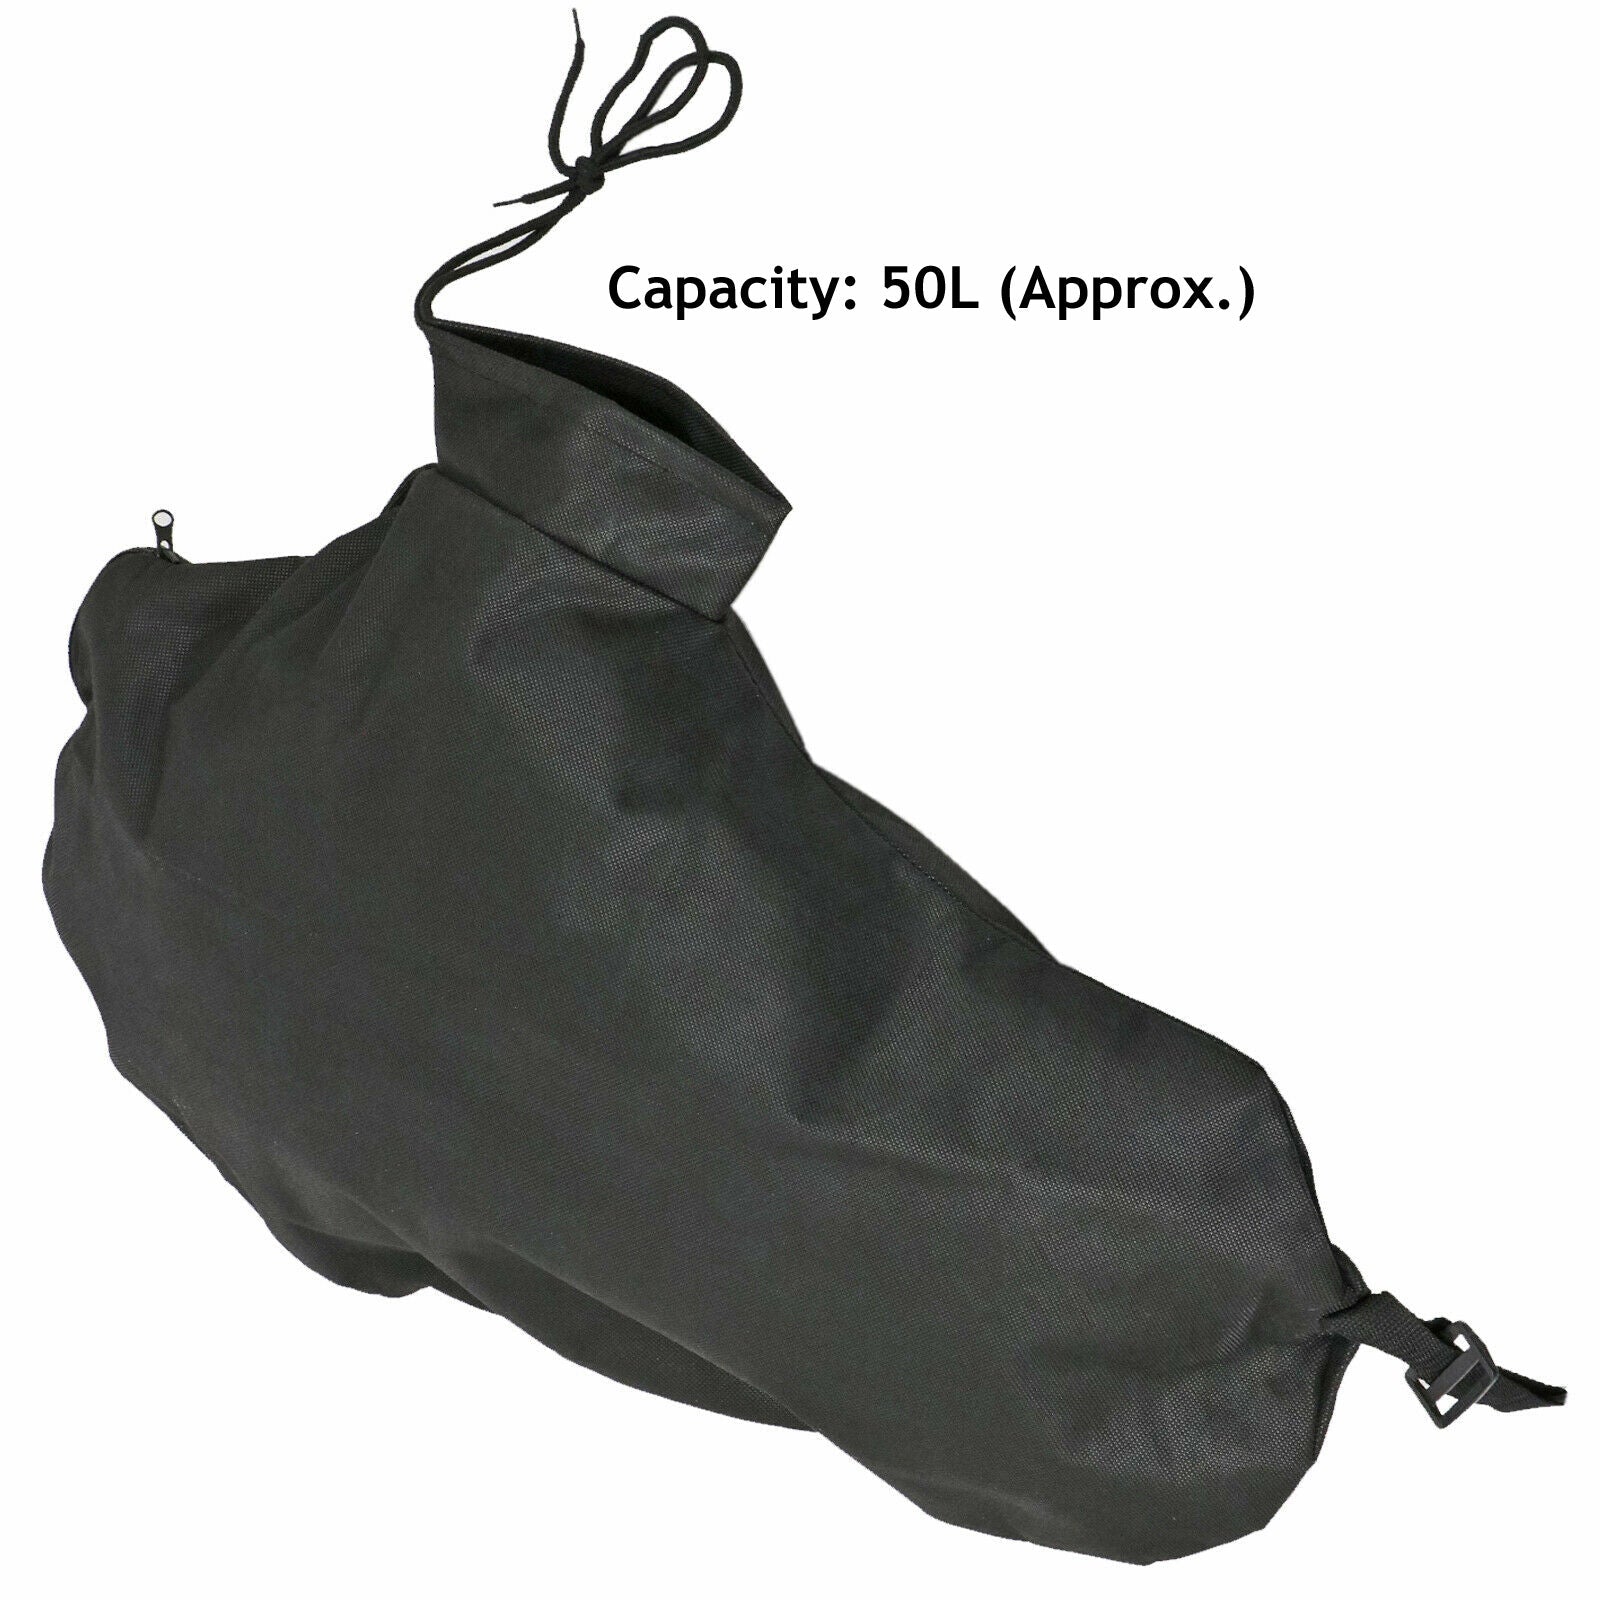 Debris Collection Bag Sack for MACALLISTER MBV2800 Garden Vac Leaf Blower Vacuum x 2